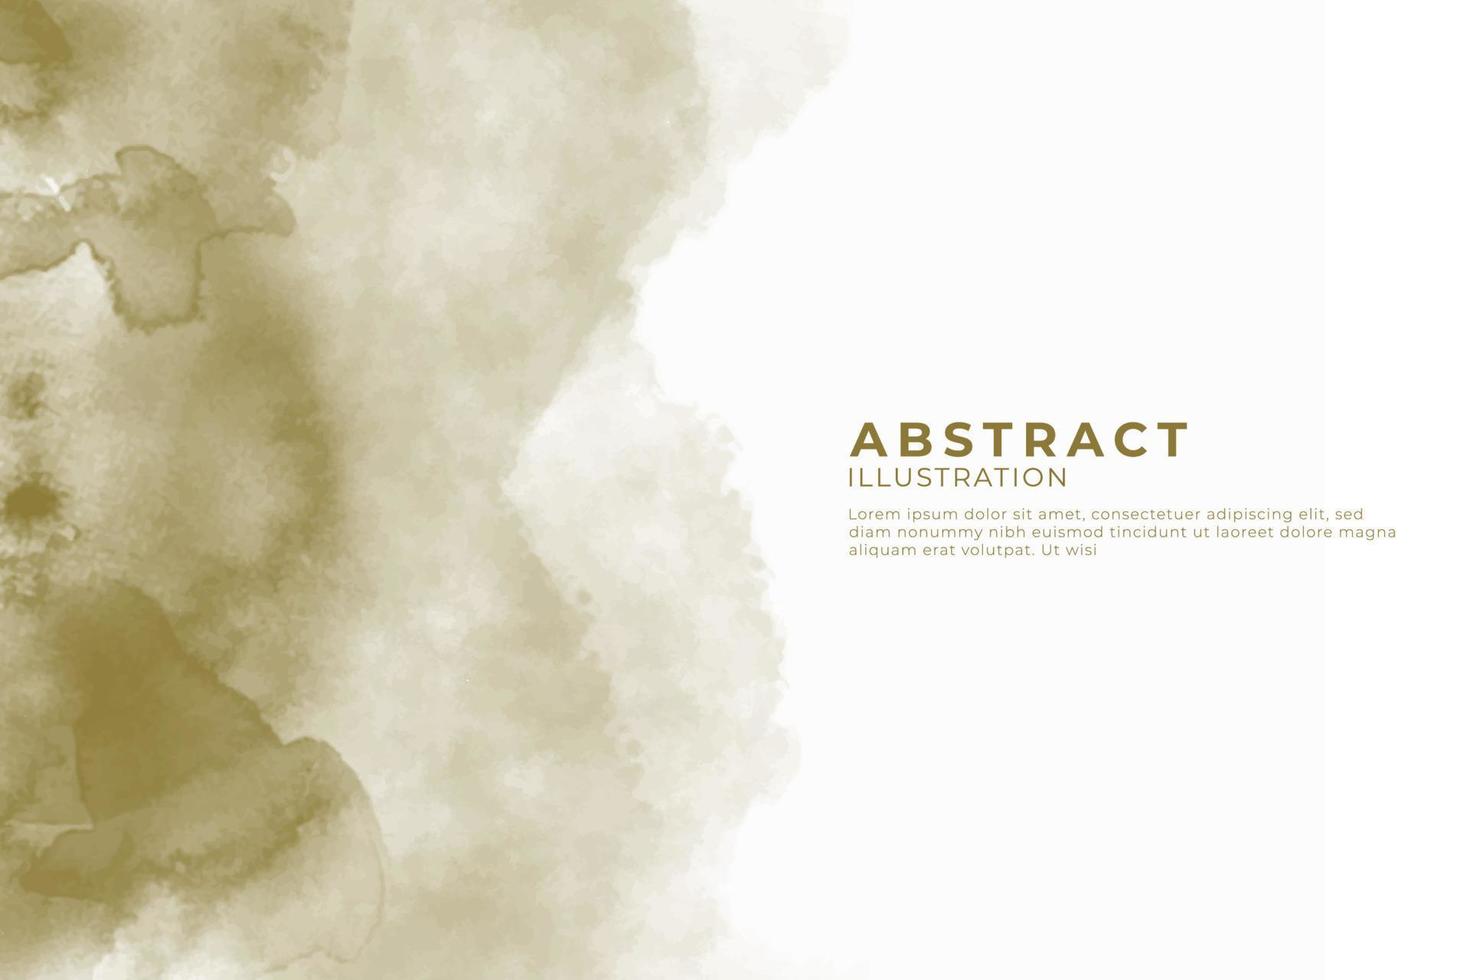 abstrakter aquarell strukturierter hintergrund. design für ihr datum, postkarte, banner, logo. vektor